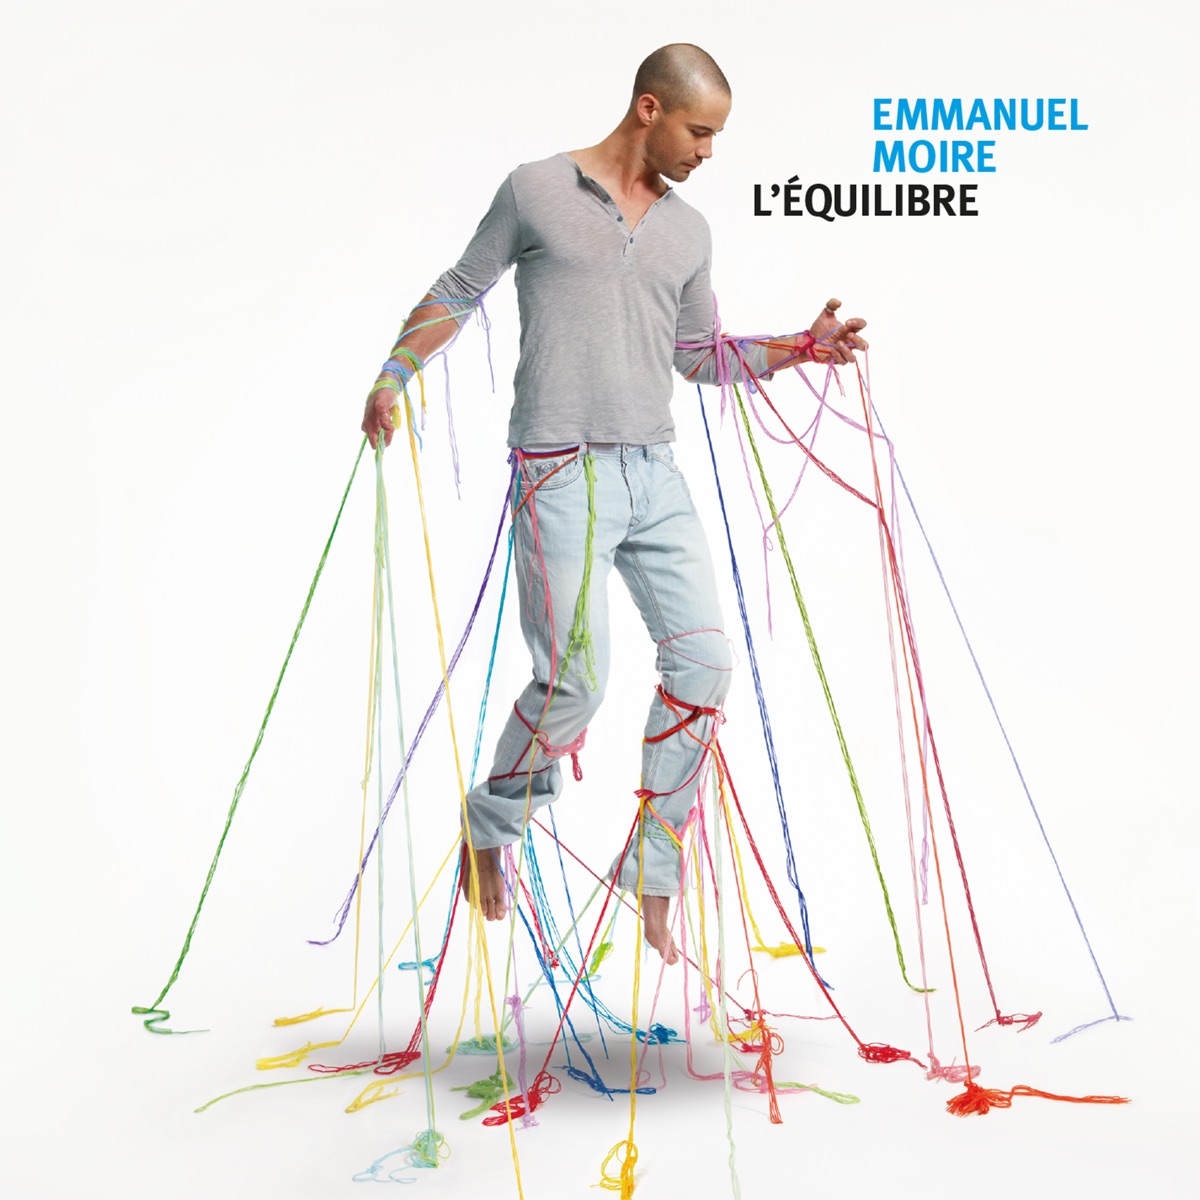 Je fais de toi mon essentiel - EP by Emmanuel Moire on Apple Music